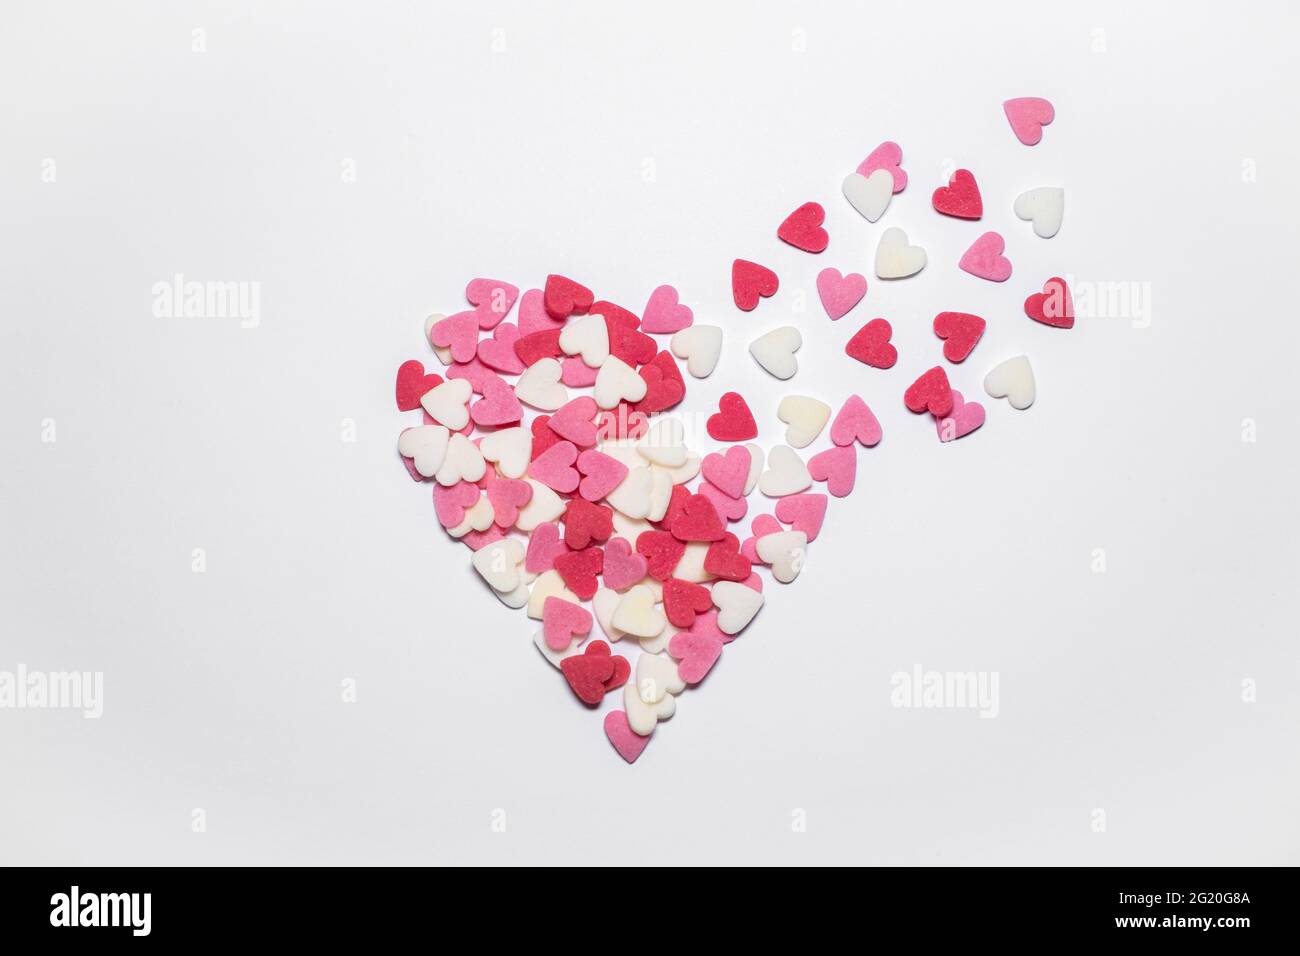 Süße Herzen. Rosa, rote und weiße herzförmige Zuckerstreuseln. Bunte kleine Herzen fliegen ab. Hintergrund oder Karte zum Valentinstag oder Muttertag. Stockfoto